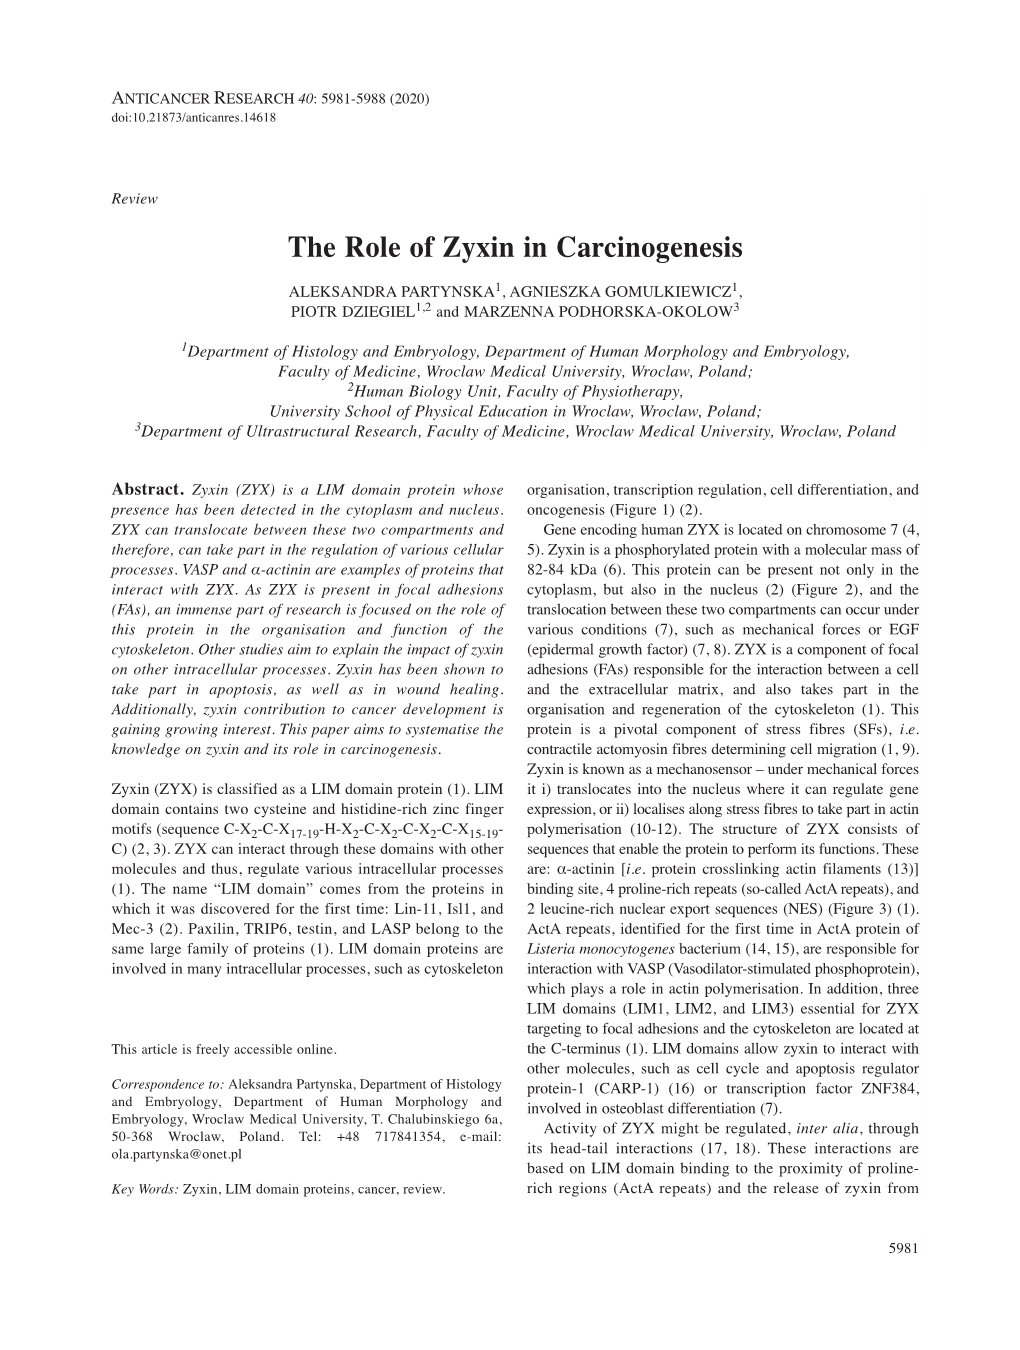 The Role of Zyxin in Carcinogenesis ALEKSANDRA PARTYNSKA 1, AGNIESZKA GOMULKIEWICZ 1, PIOTR DZIEGIEL 1,2 and MARZENNA PODHORSKA-OKOLOW 3